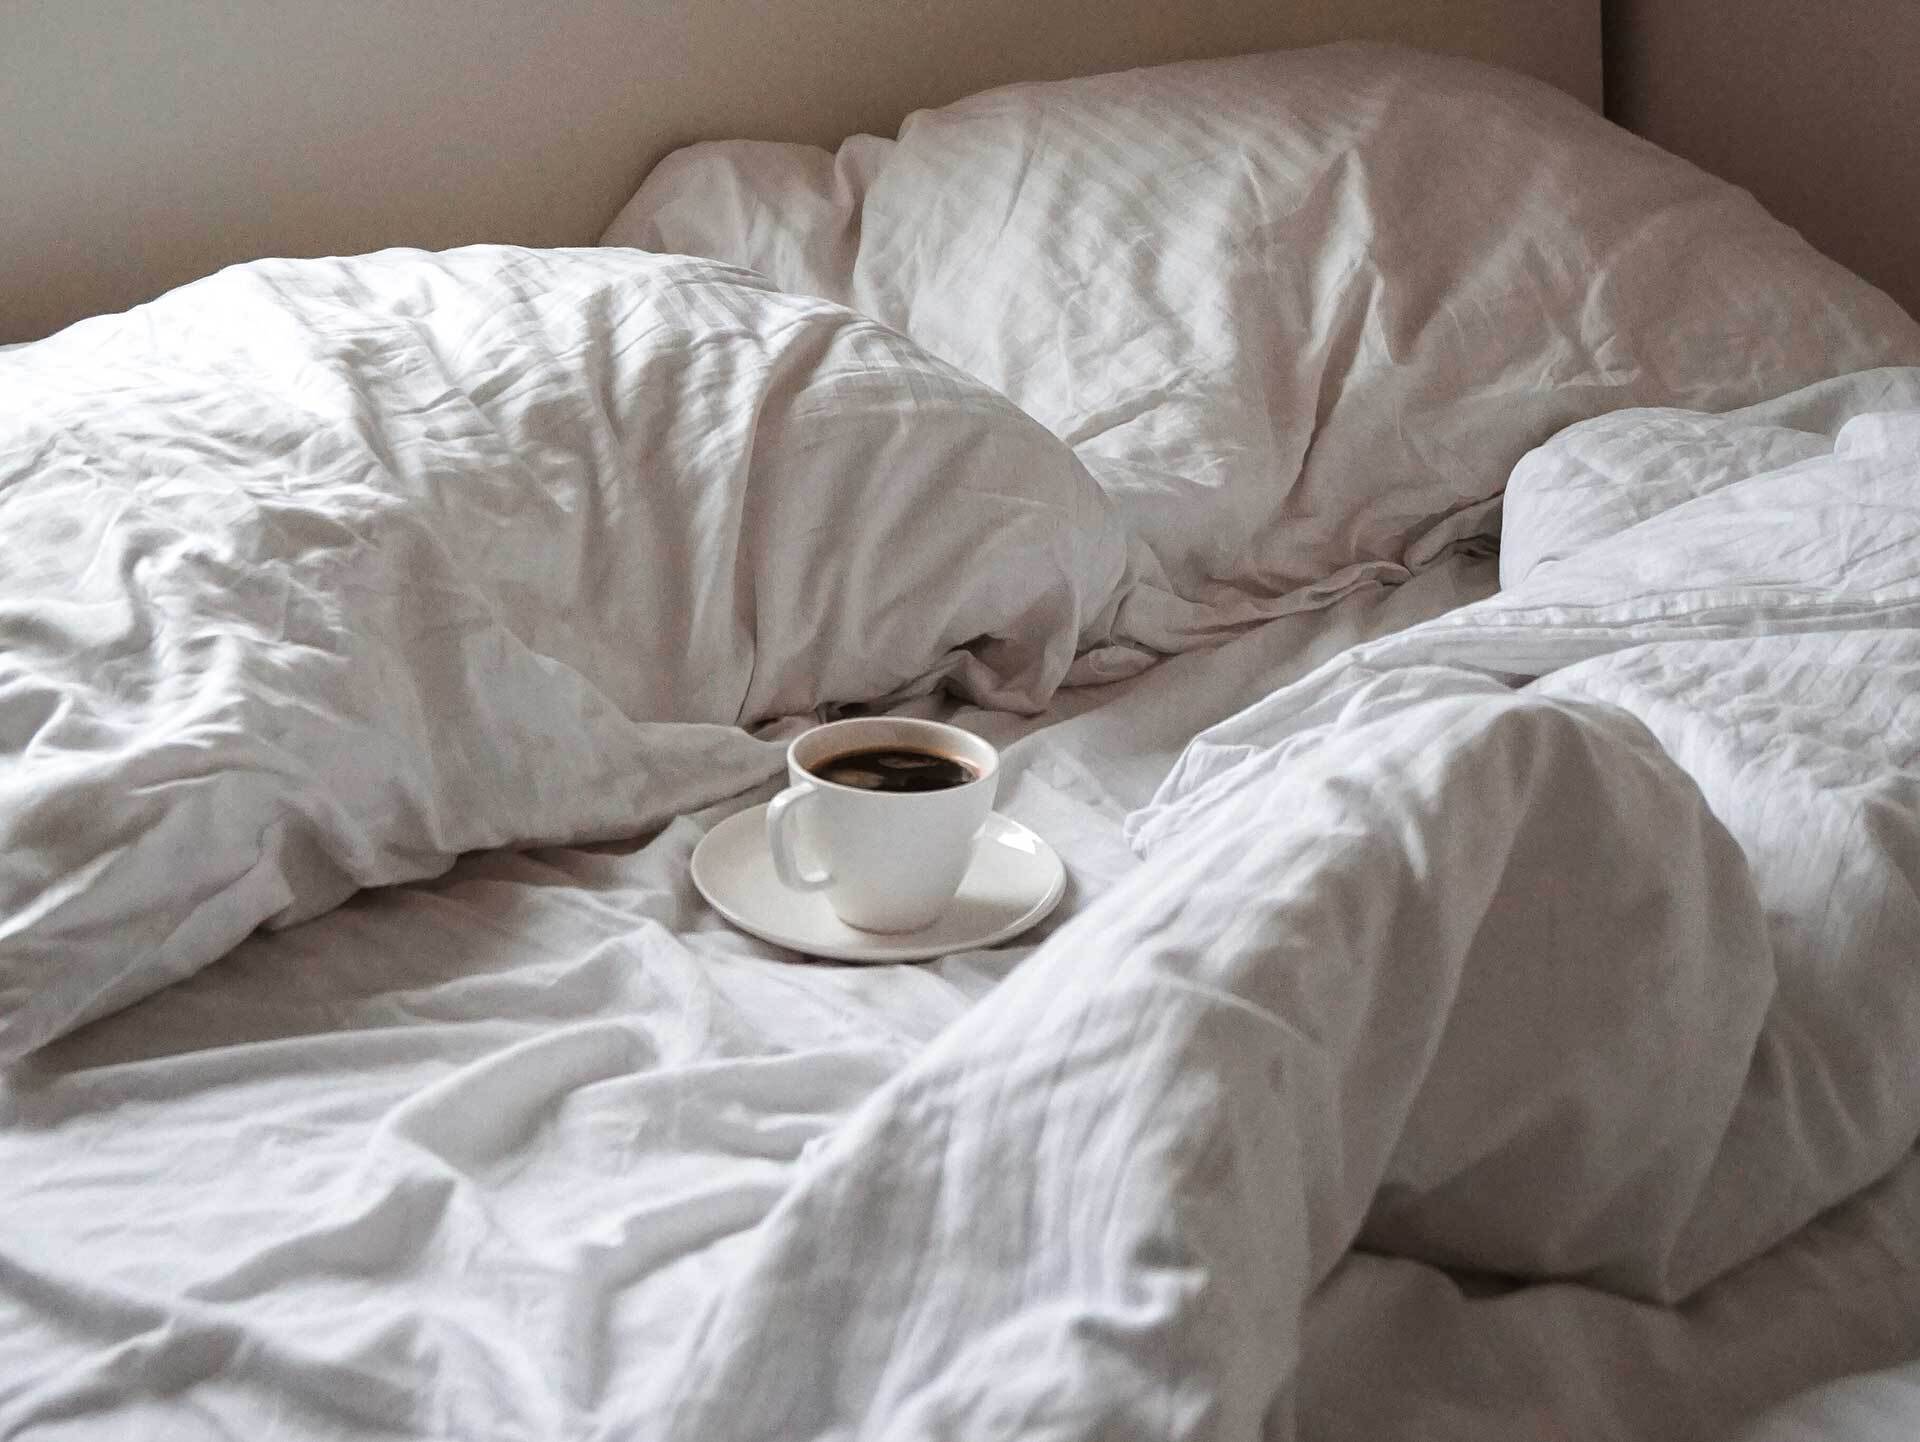 kopje koffie in bed